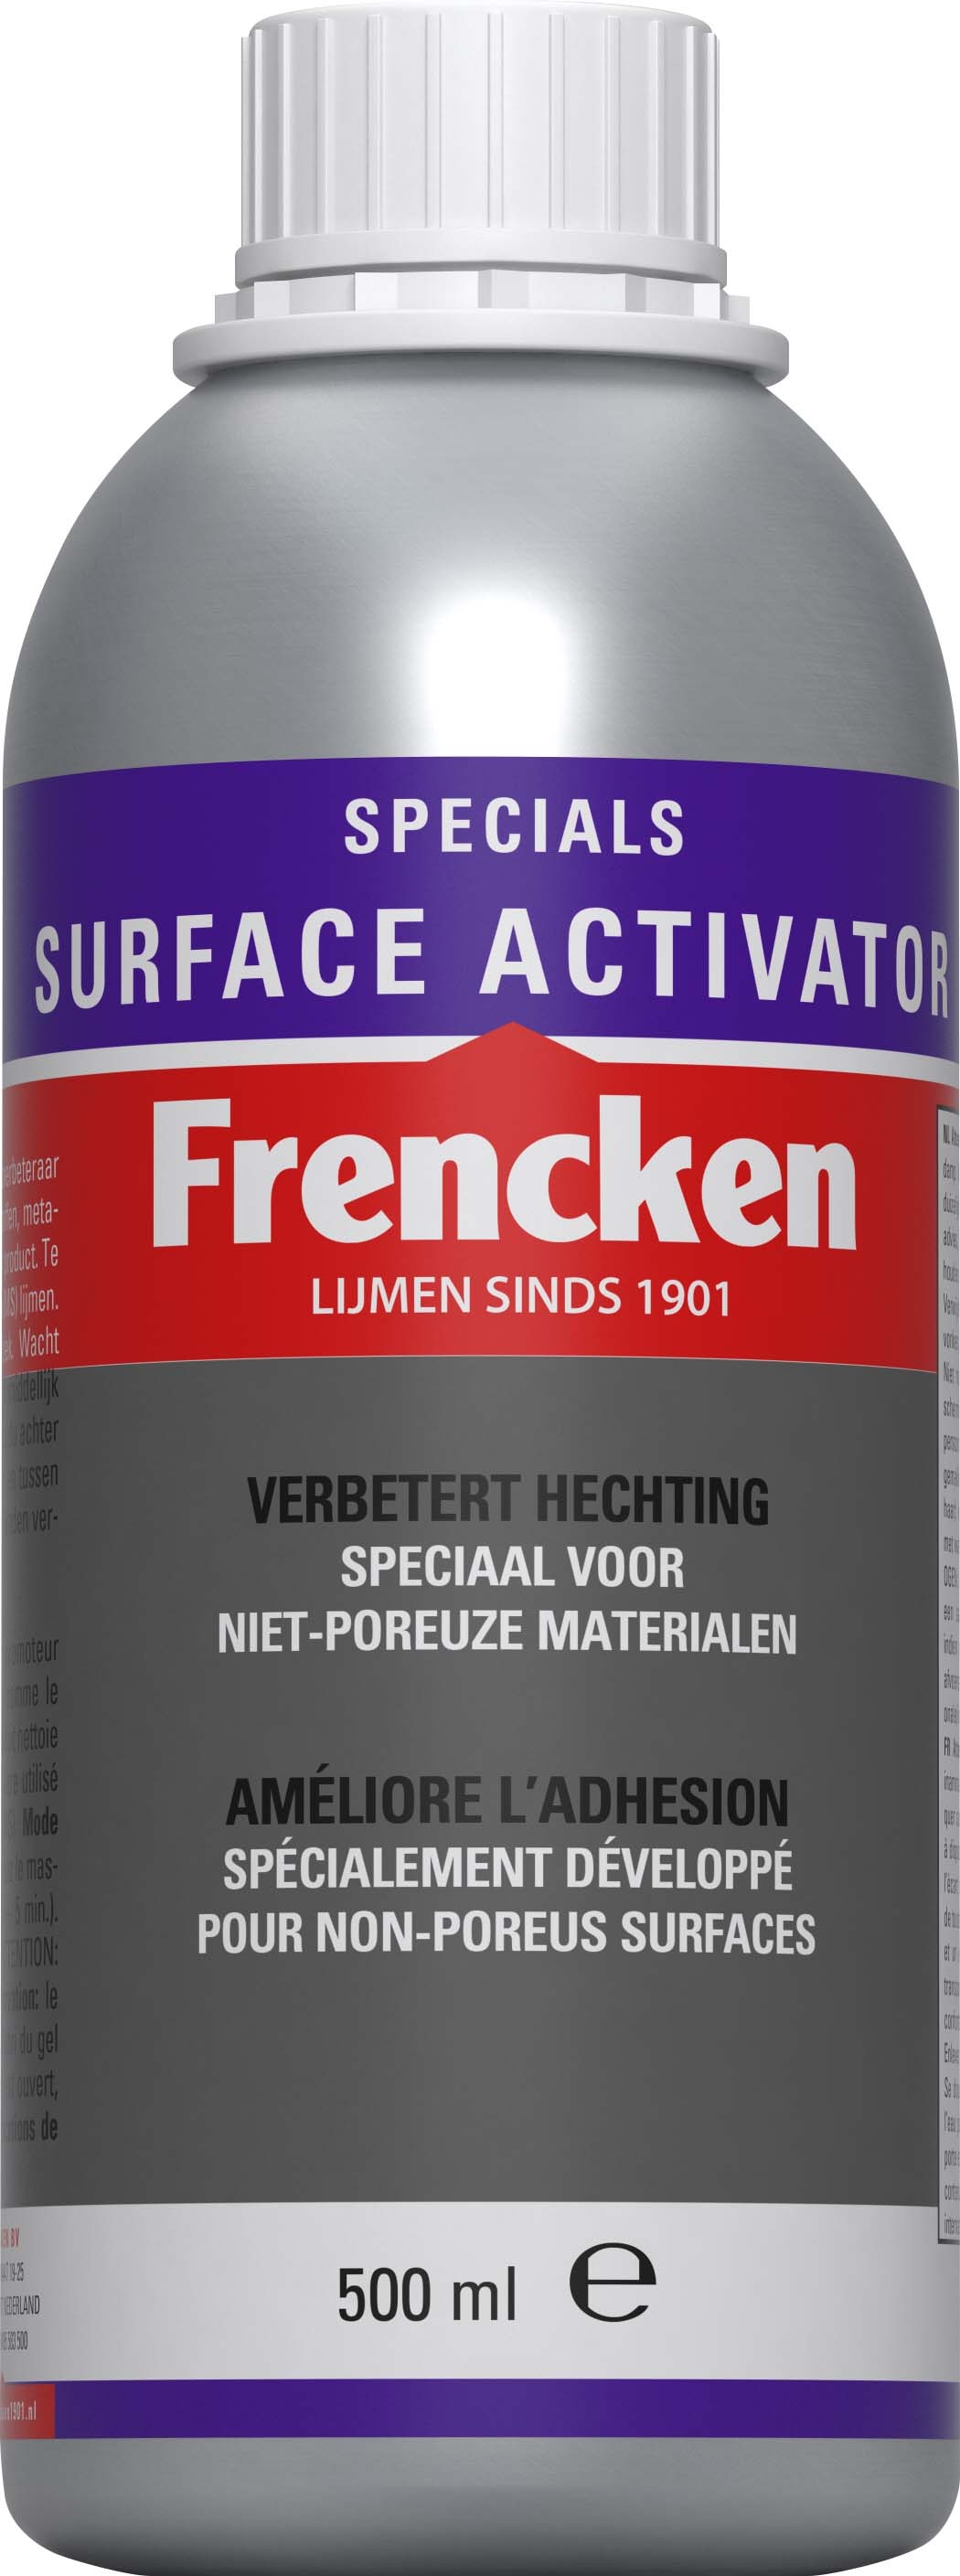 Frencken surface activator 500 ml